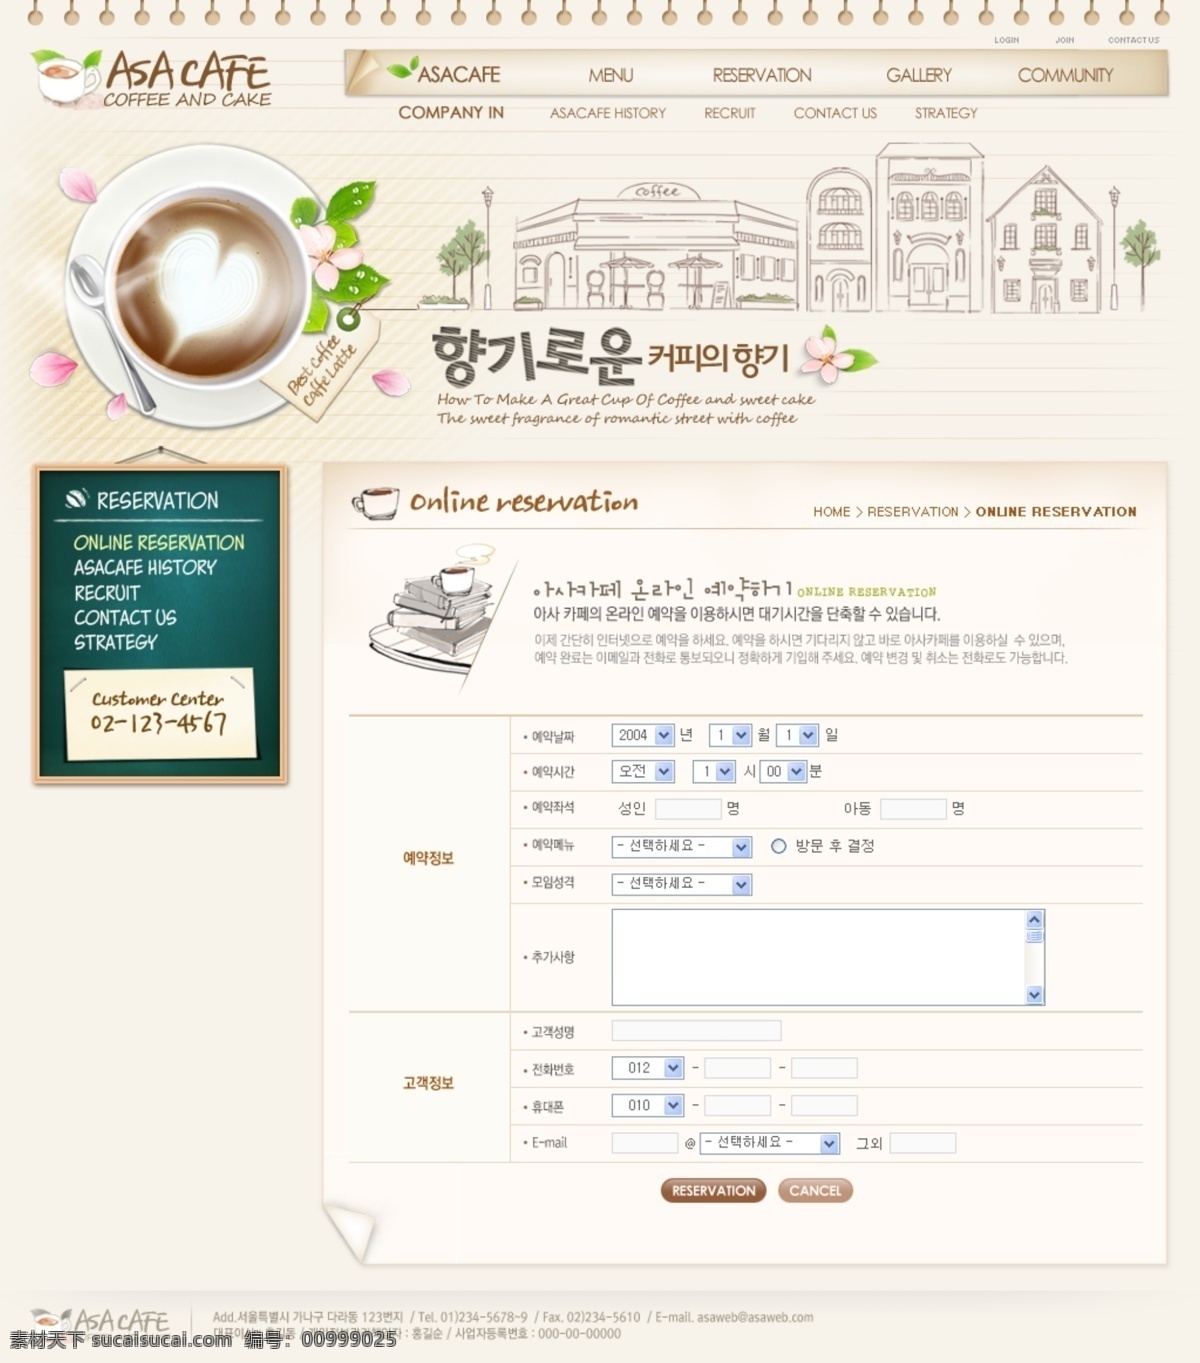 韩国风 咖啡 咖啡店 咖啡厅 咖啡网站 美食 甜点 网页模板 网站 模板下载 韩文模板 源文件 psd源文件 餐饮素材